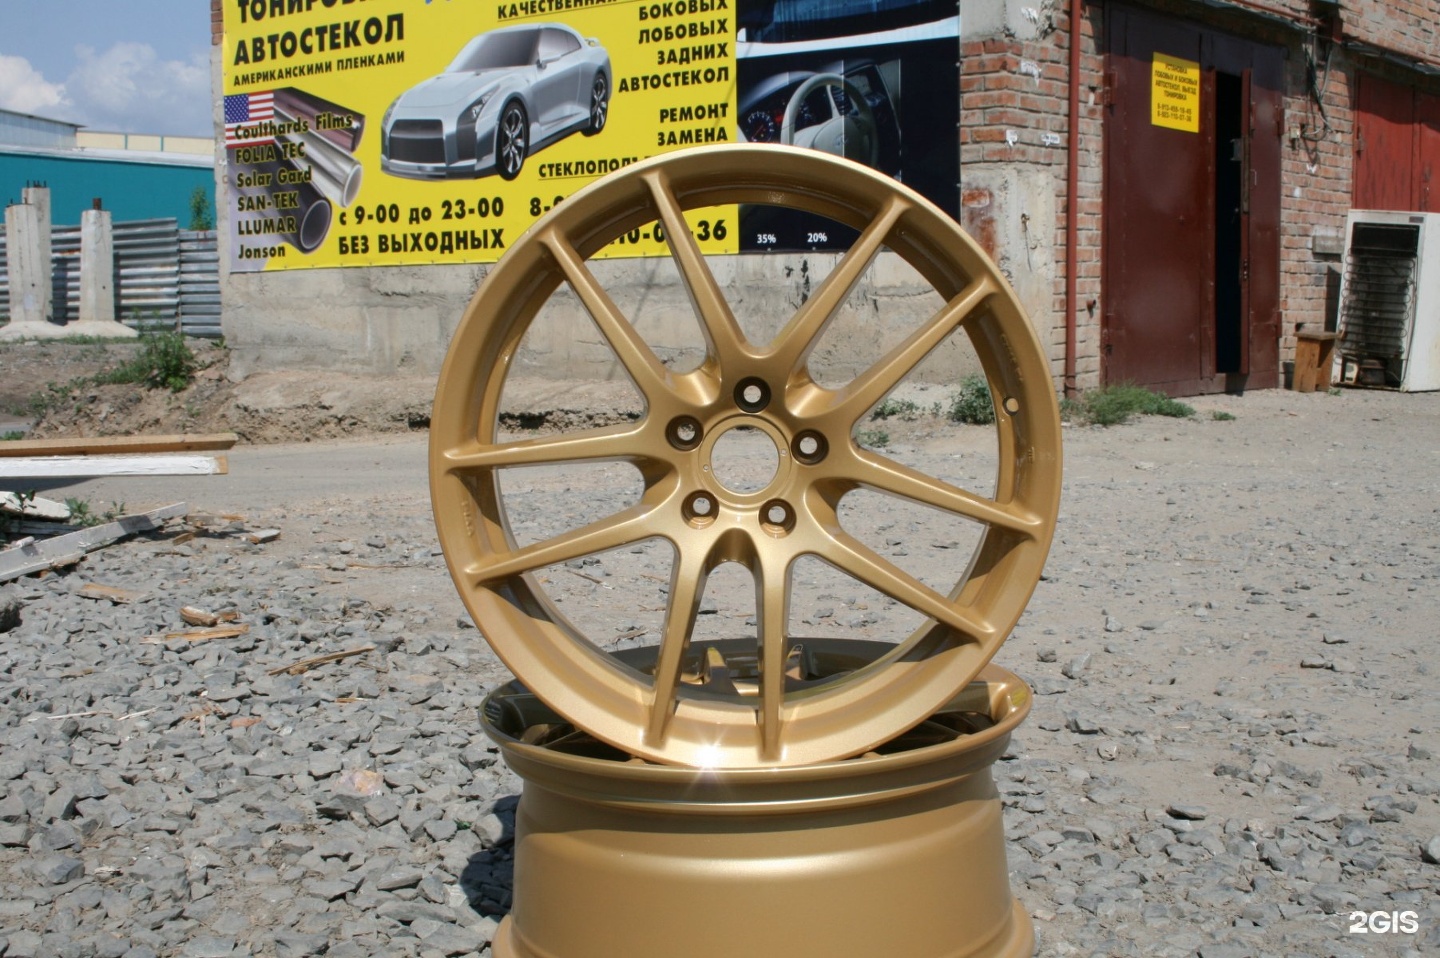 Реклама по реставрации дисков. Биг Вилс Новосибирск колеса. Колесо новосибирск сайт